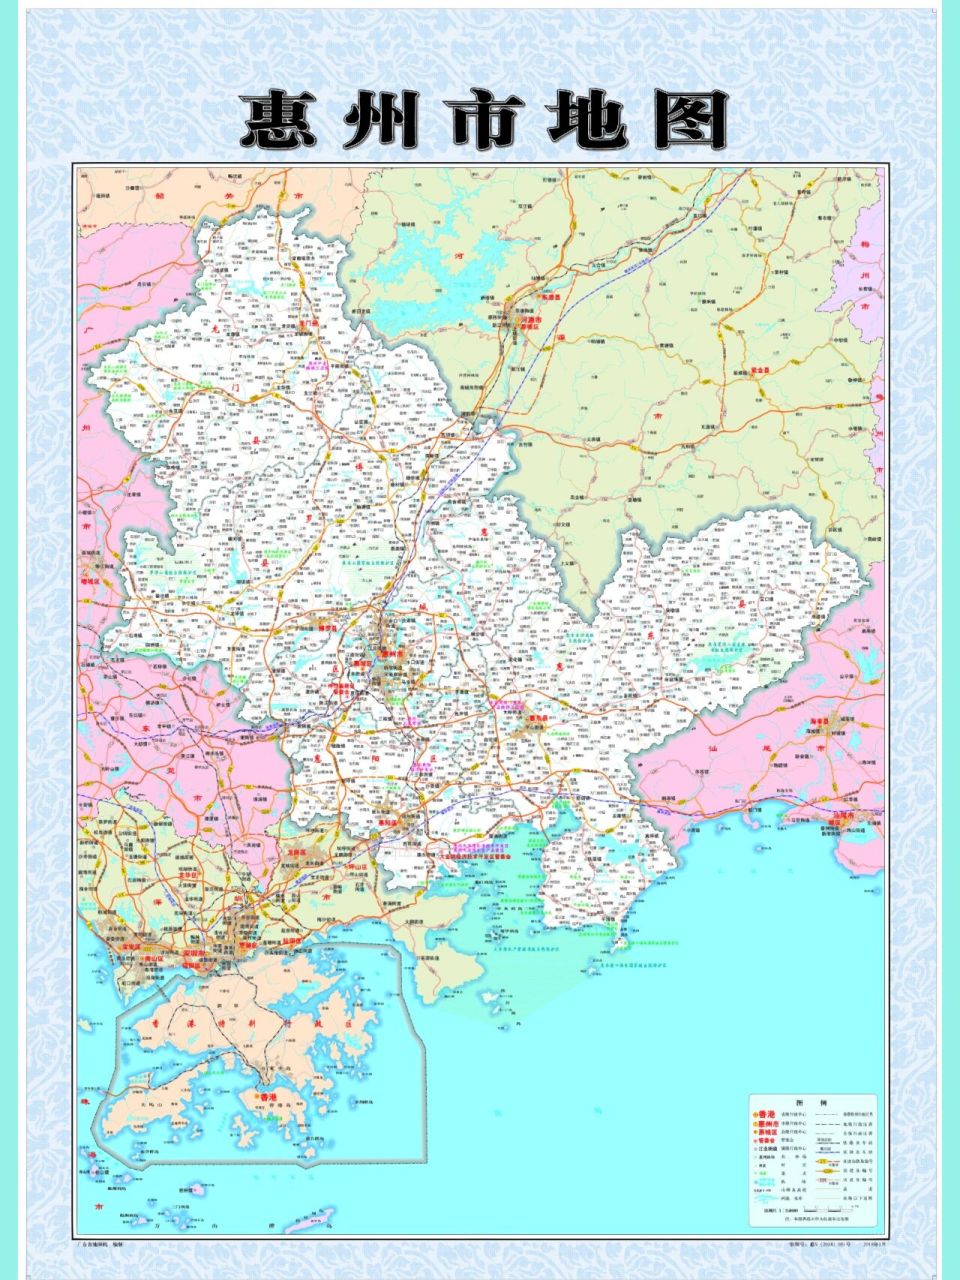 惠州高清地图分享 原图可打印放办公室   当然要分享啊,惠州高清地图,